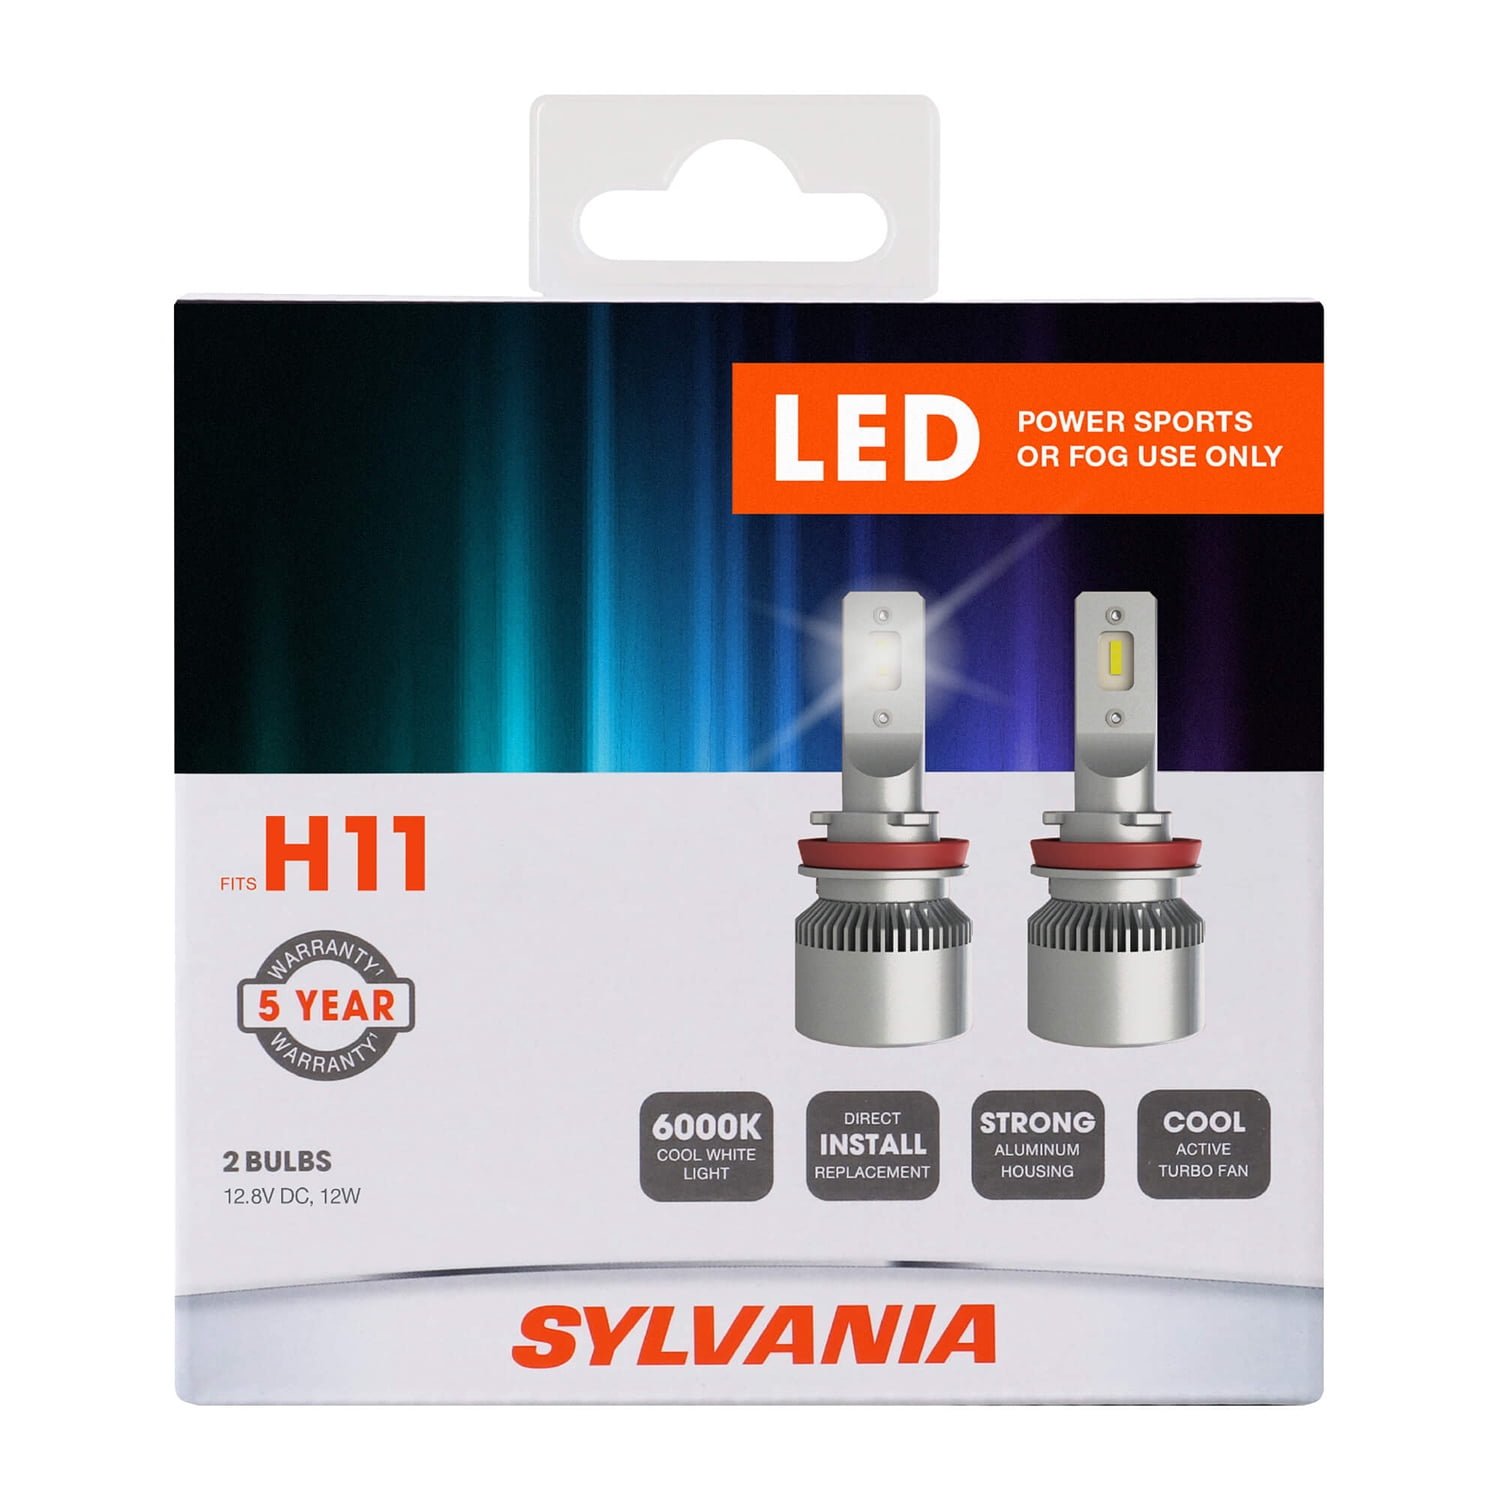 Ulydighed Hold sammen med akademisk Sylvania H11 LED Fog Light and Powersport Bulb - 2 Pack - Walmart.com